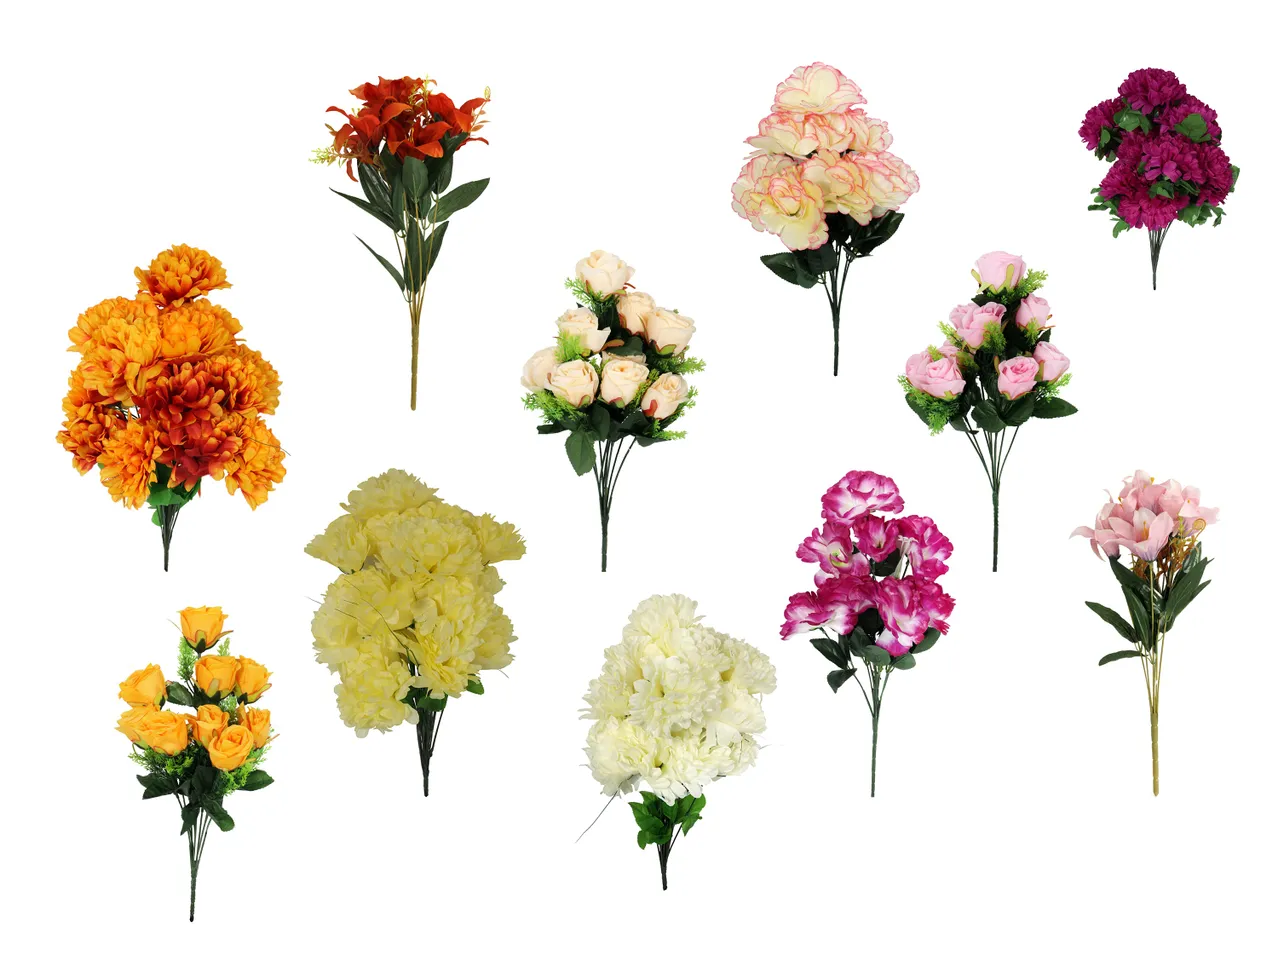 Bukiet sztucznych kwiatów , cena 16,99 PLN 
Bukiet sztucznych kwiatów 11 zestawów ...